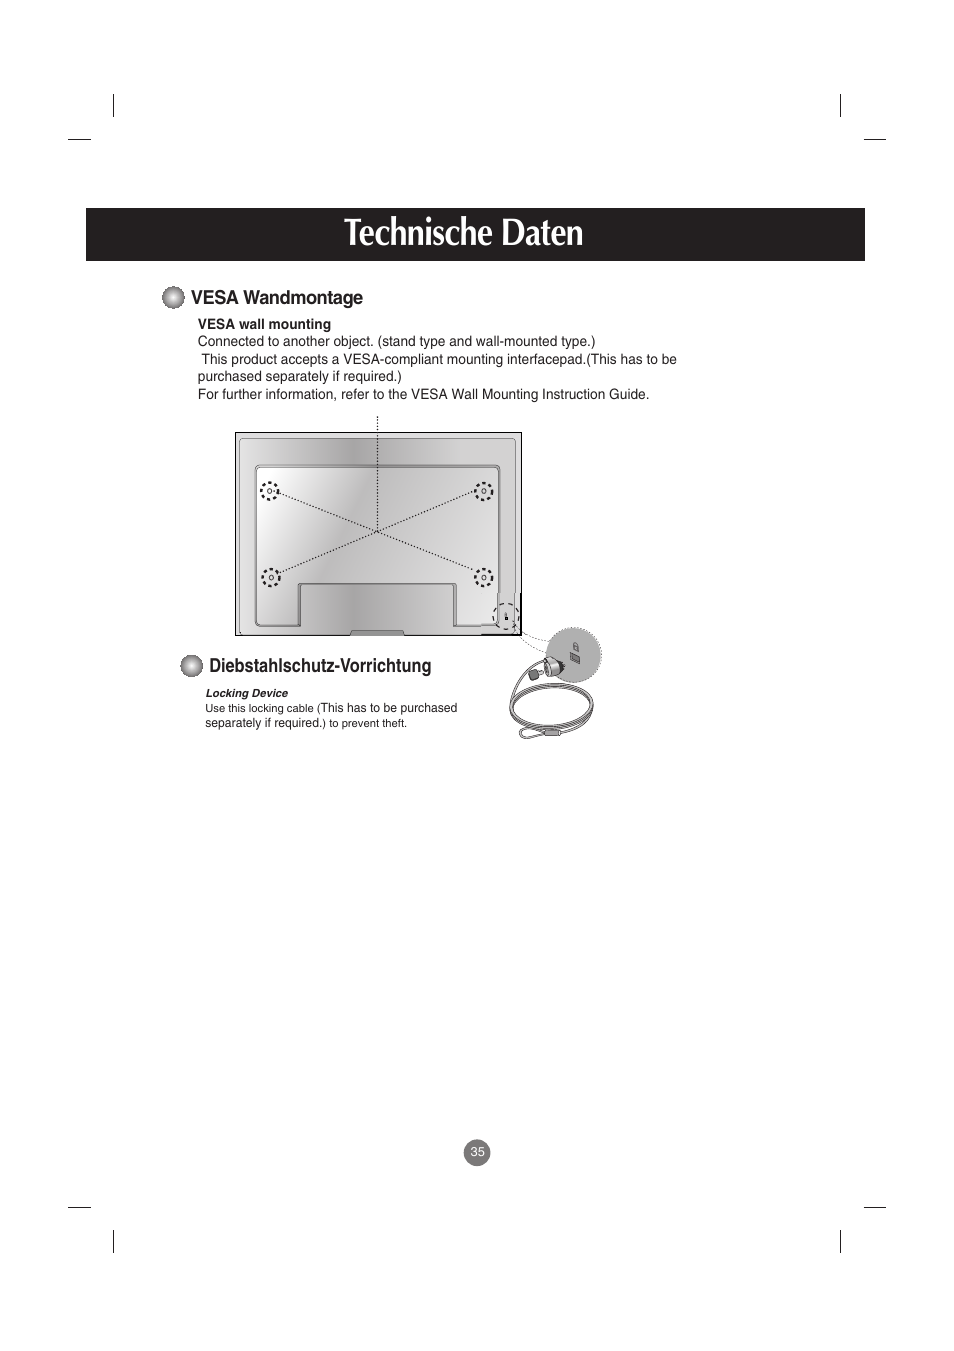 Vesa wandmontage, Diebstahlschutz-vorrichtung, Technische daten | LG M4710C-BAT Benutzerhandbuch | Seite 36 / 54